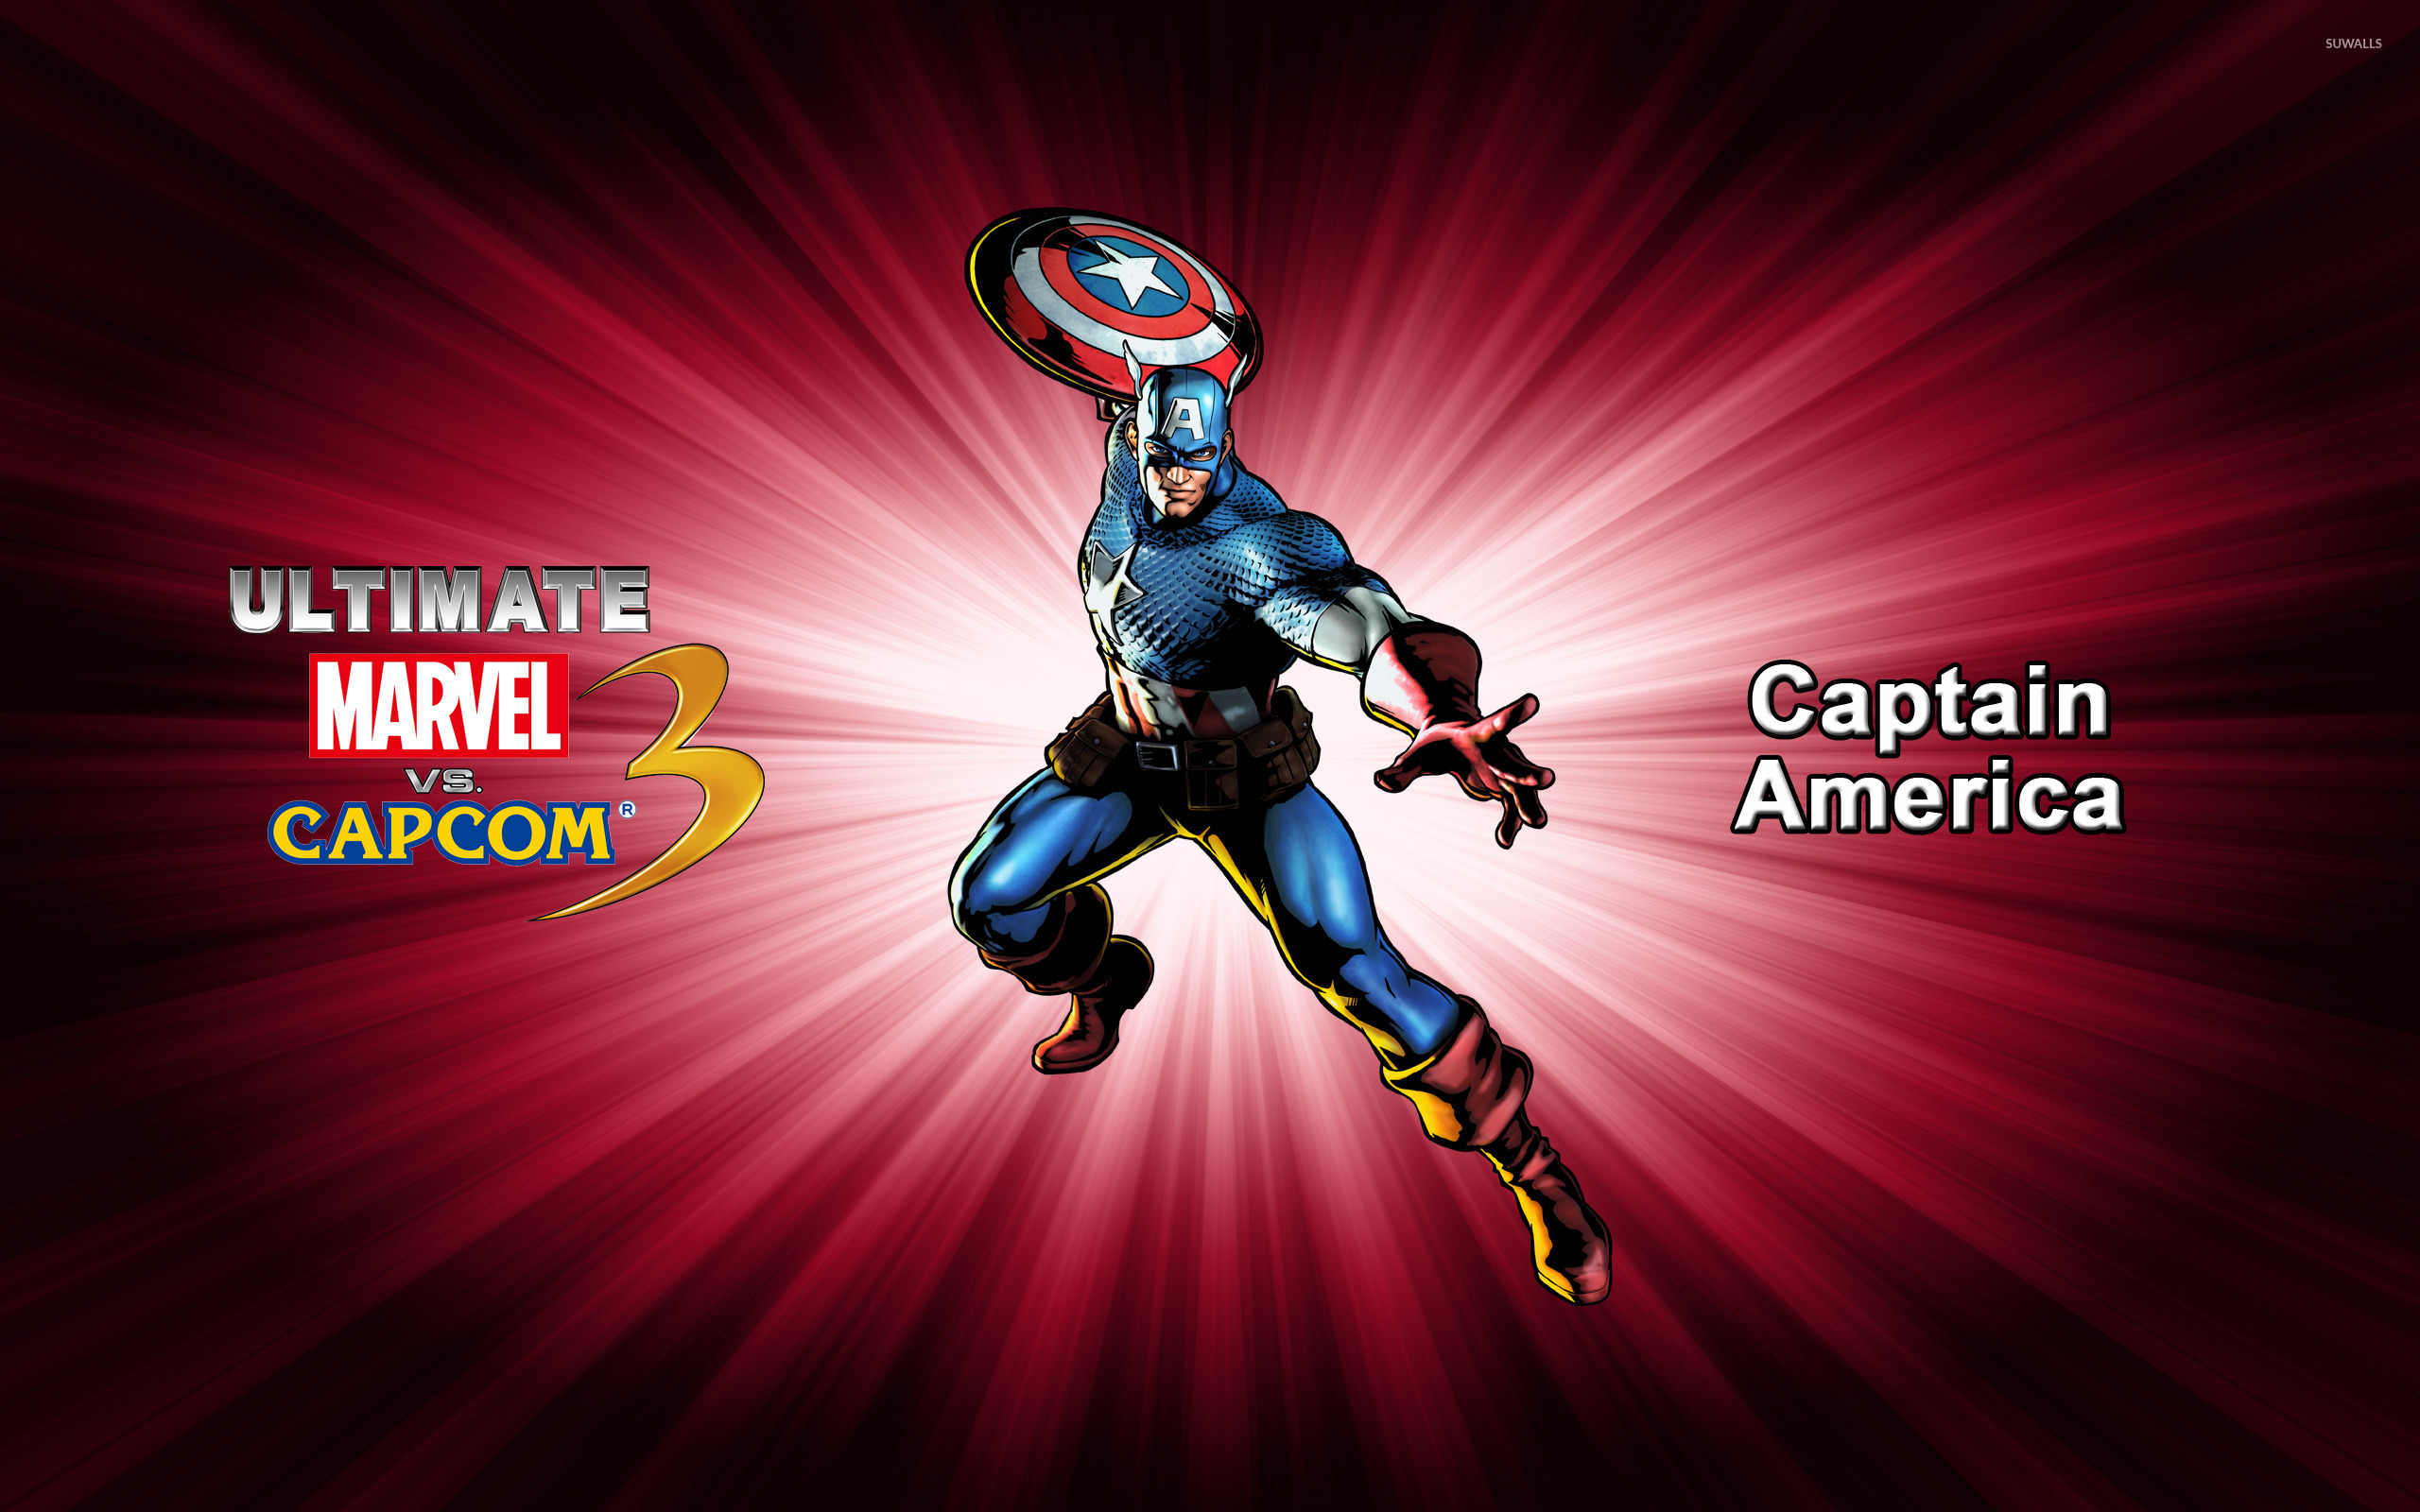 Captain America - Ultimate Marvel vs. Capcom 3 jpg 2560x1600. 